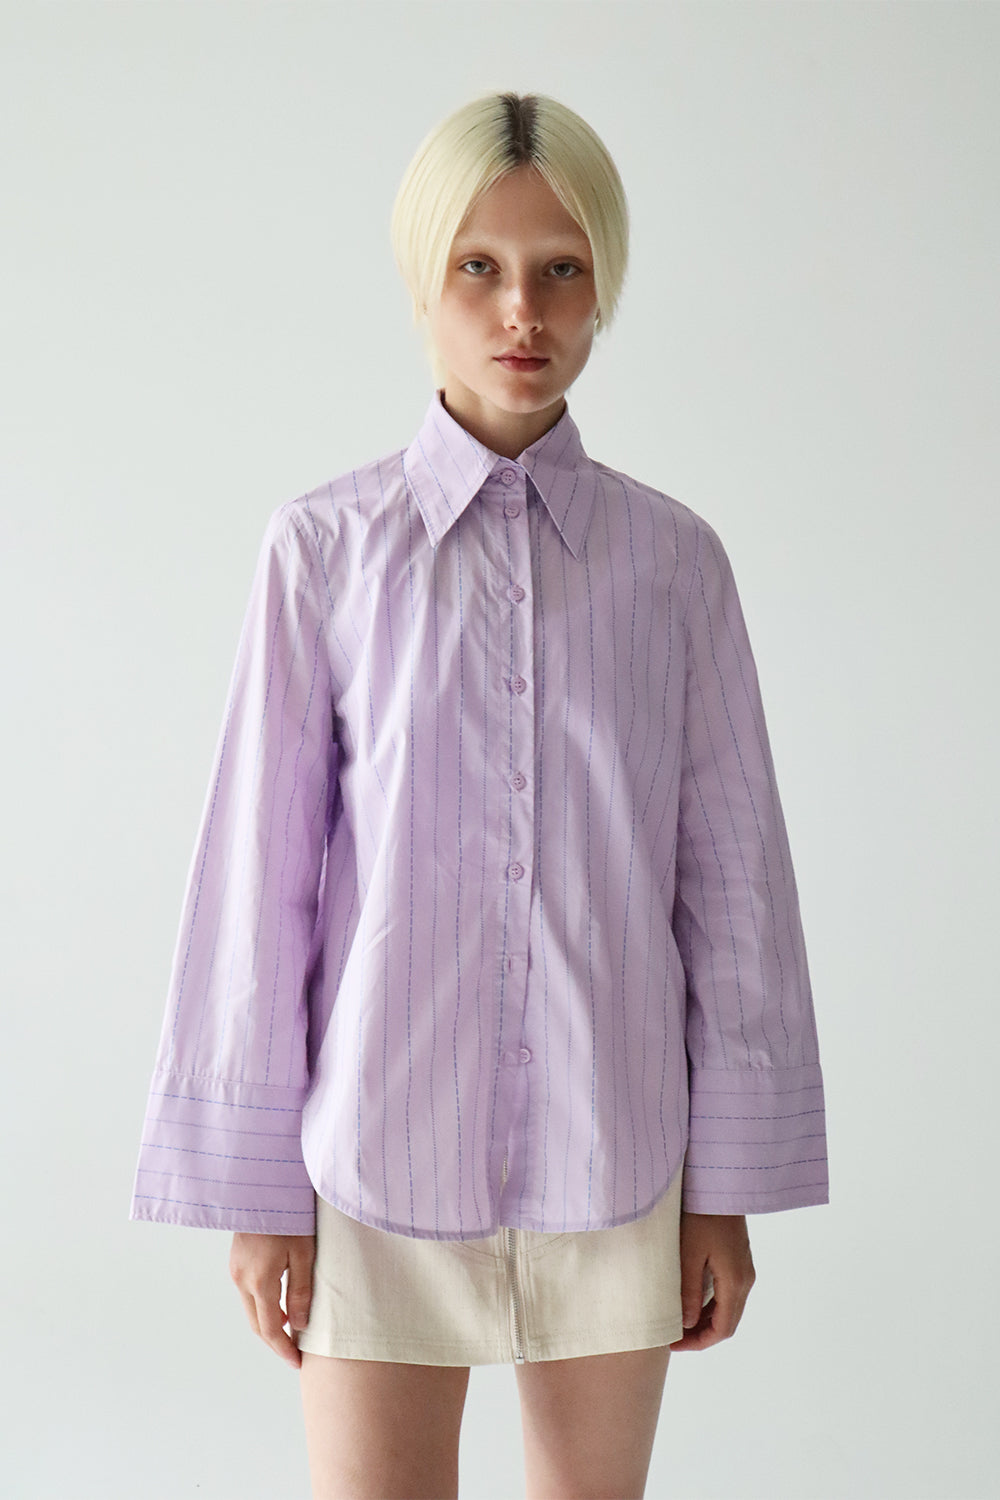 Fern Shirt in Lilac